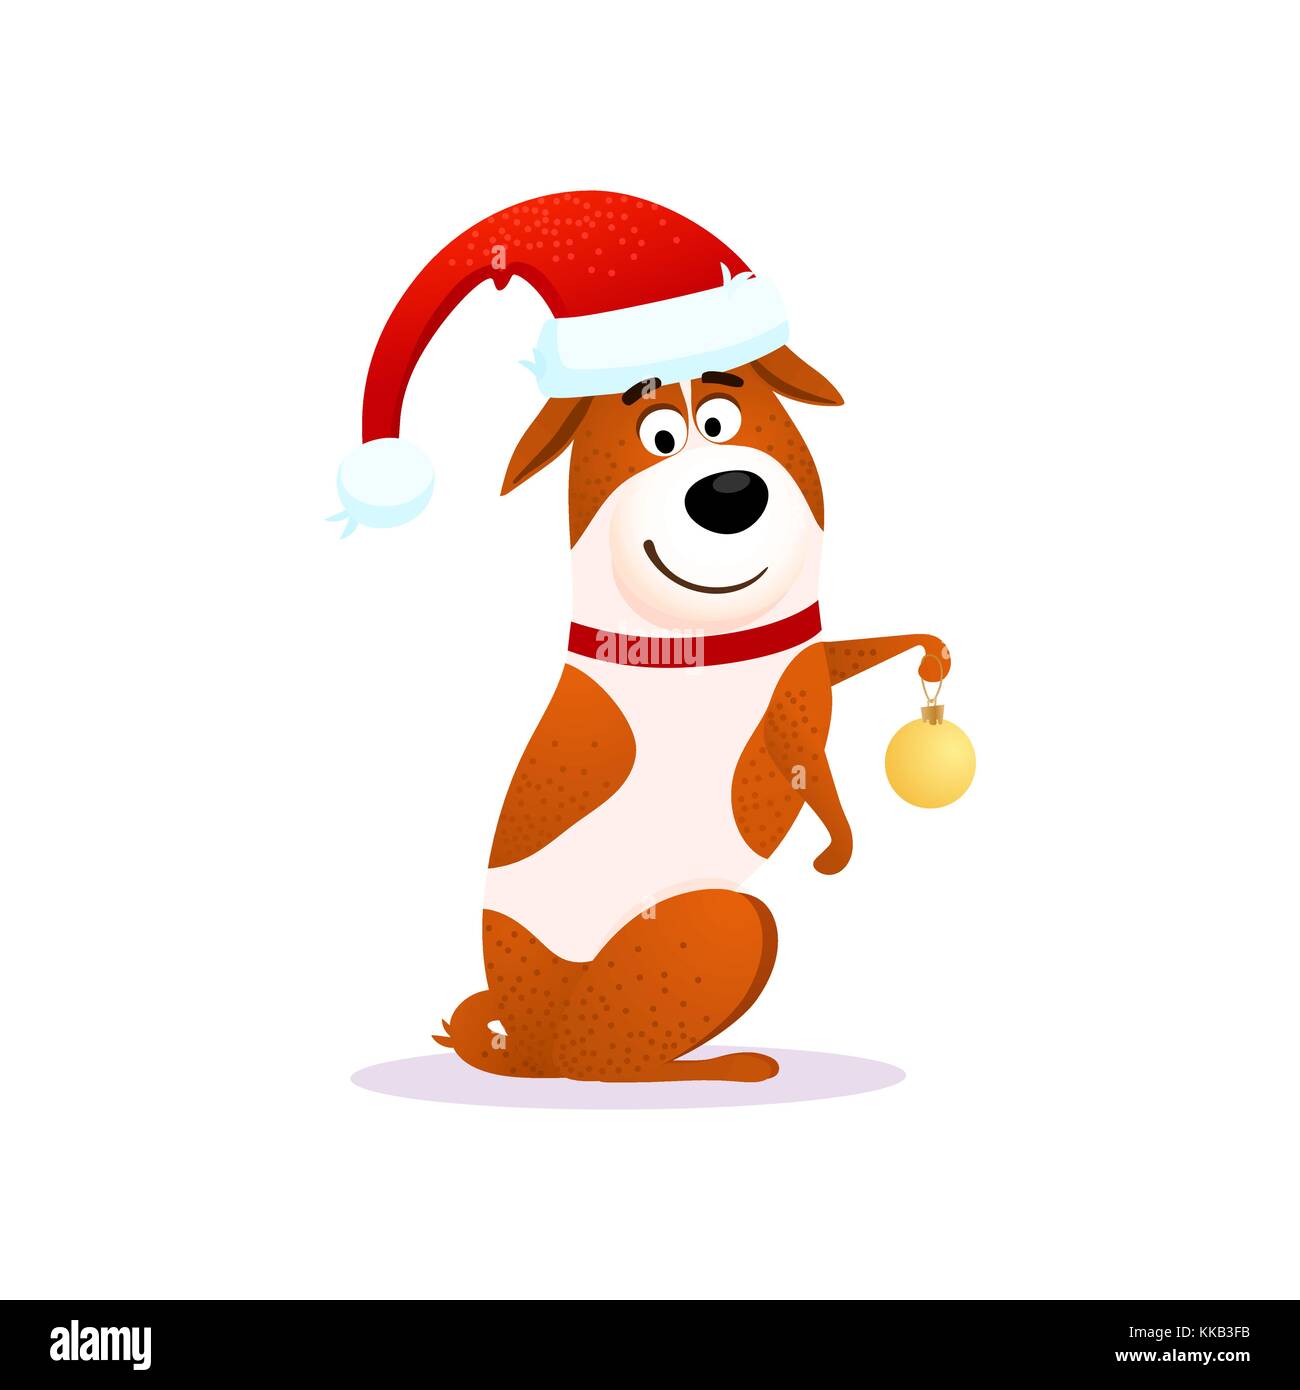 Perro de dibujos animados feliz con decoración navideña. Navidad gracioso  flat character design. Cachorro aislado sobre fondo blanco. Terrier llevar  sombrero rojo de Santa Claus. Navidad o Año Nuevo 2018 ilustración vectorial